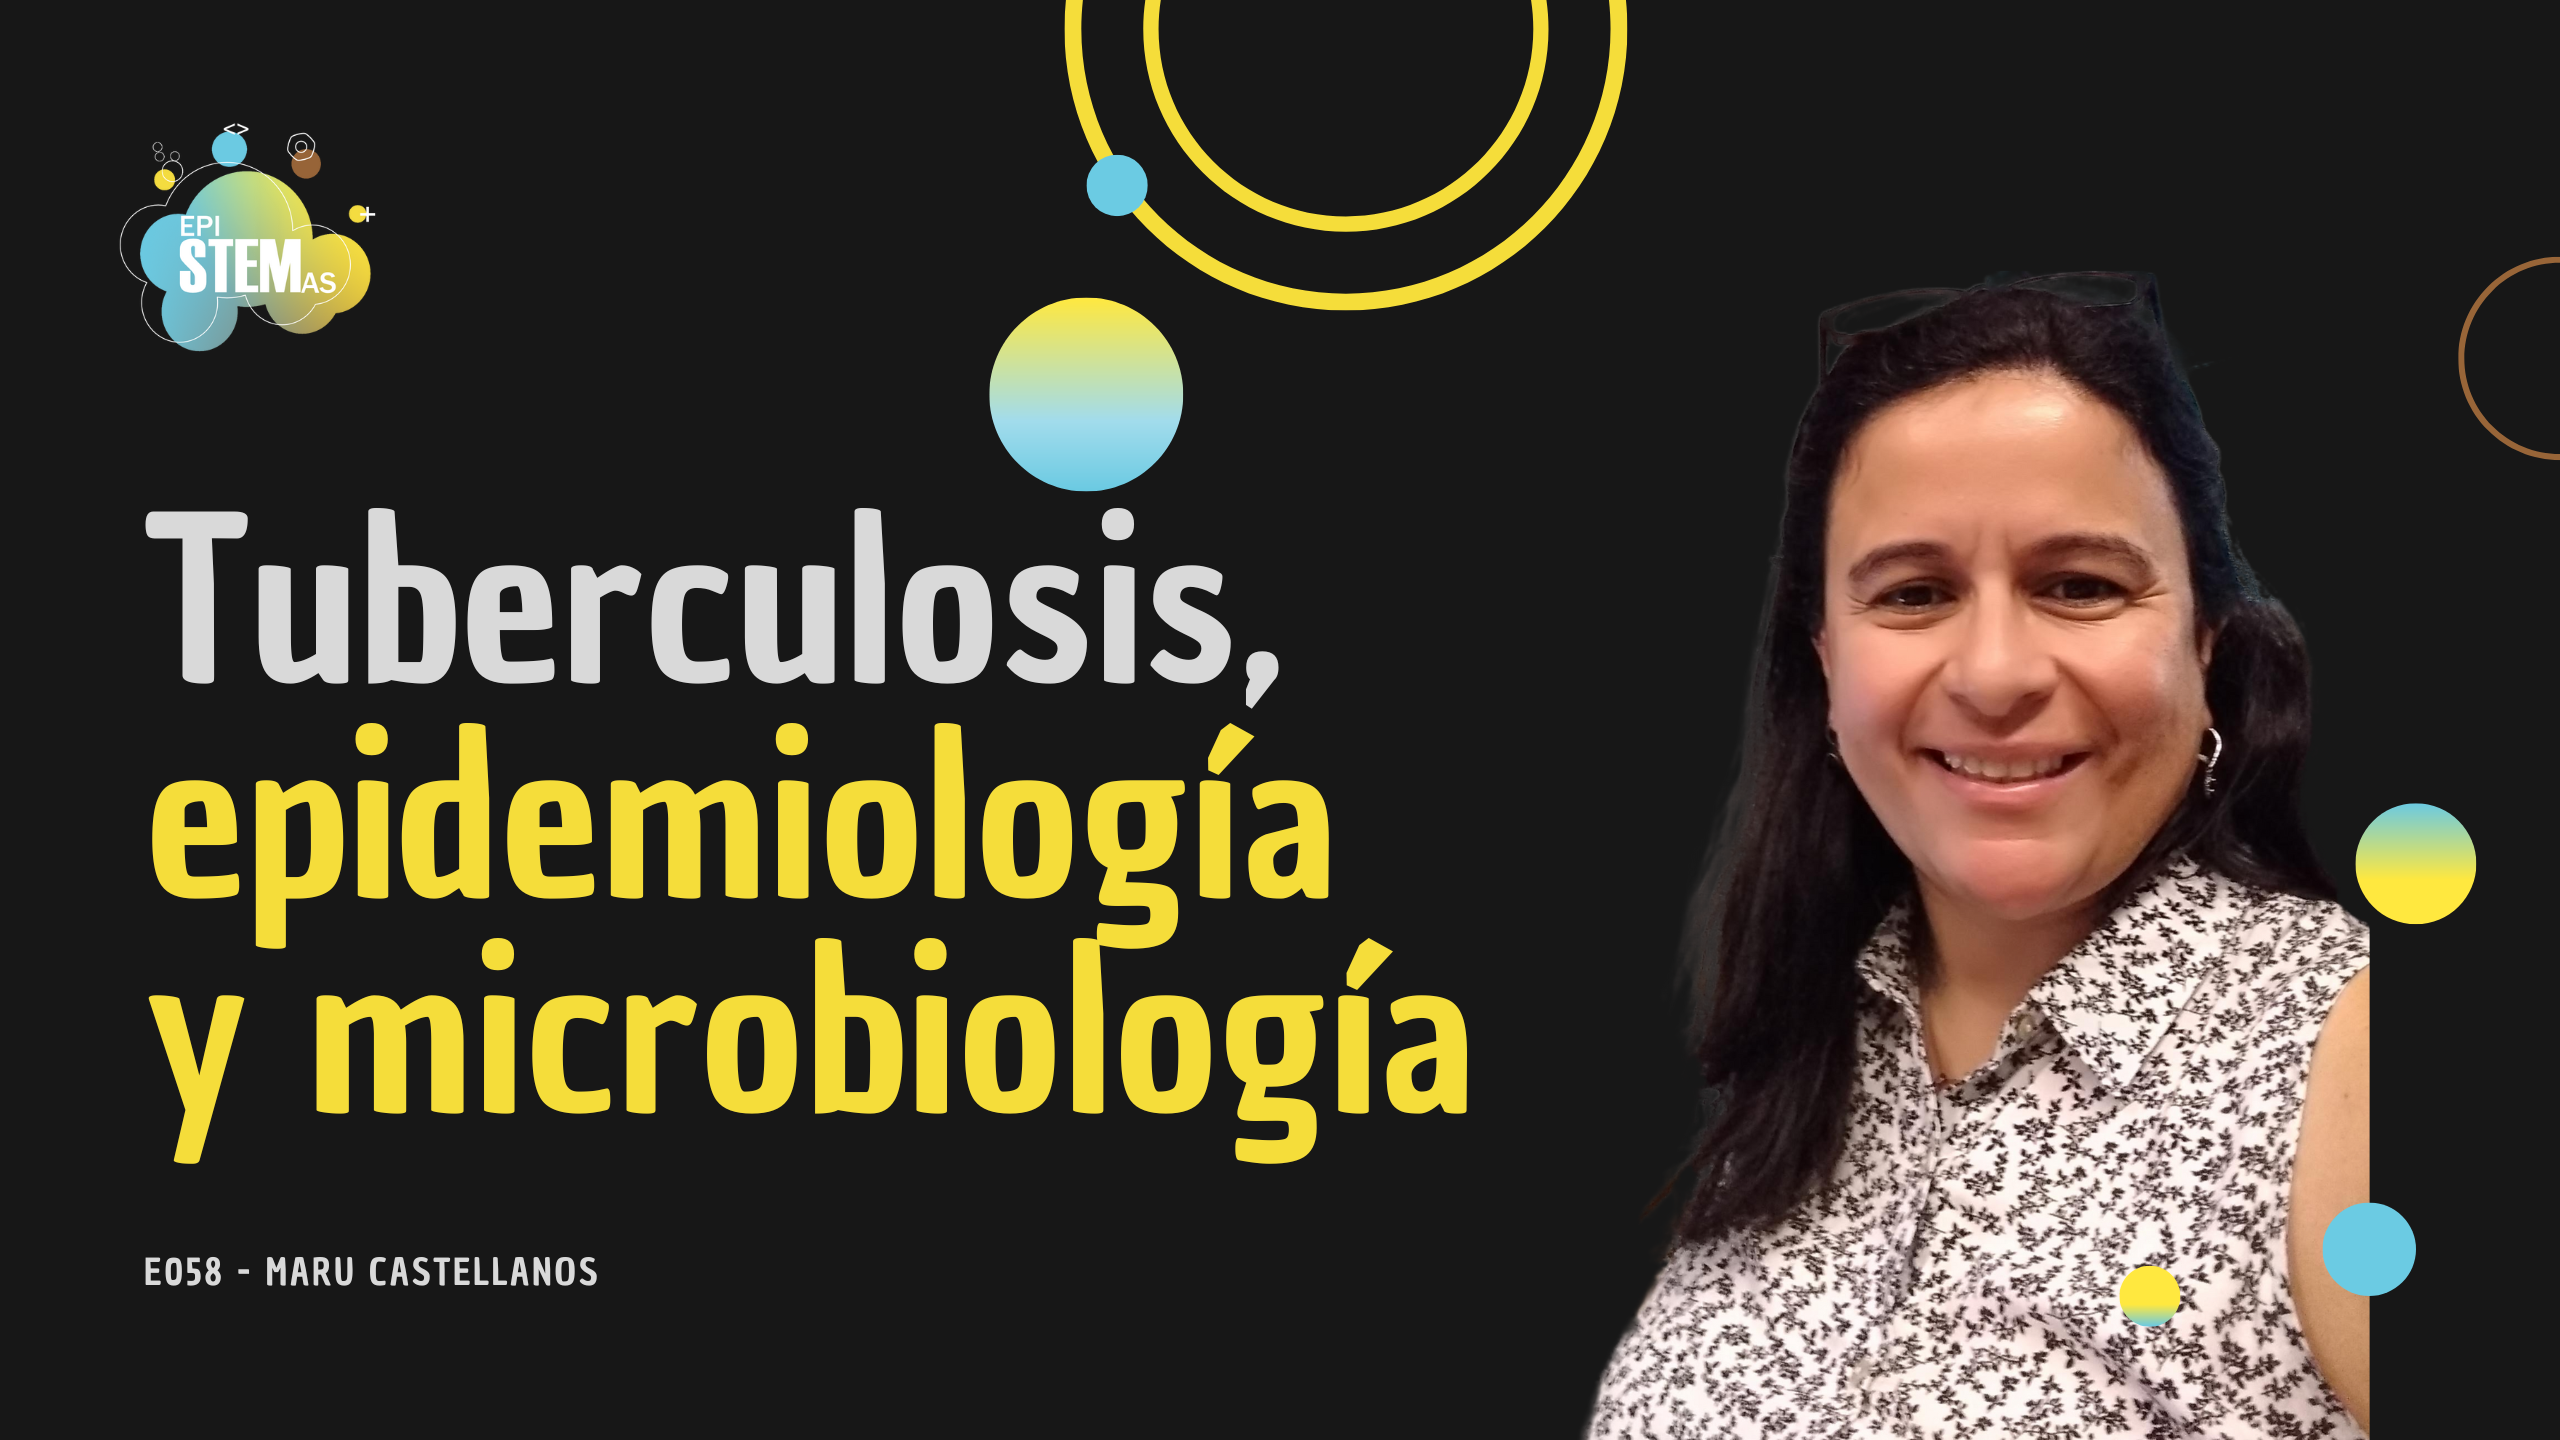 Tuberculosis, epidemiología y microbiología